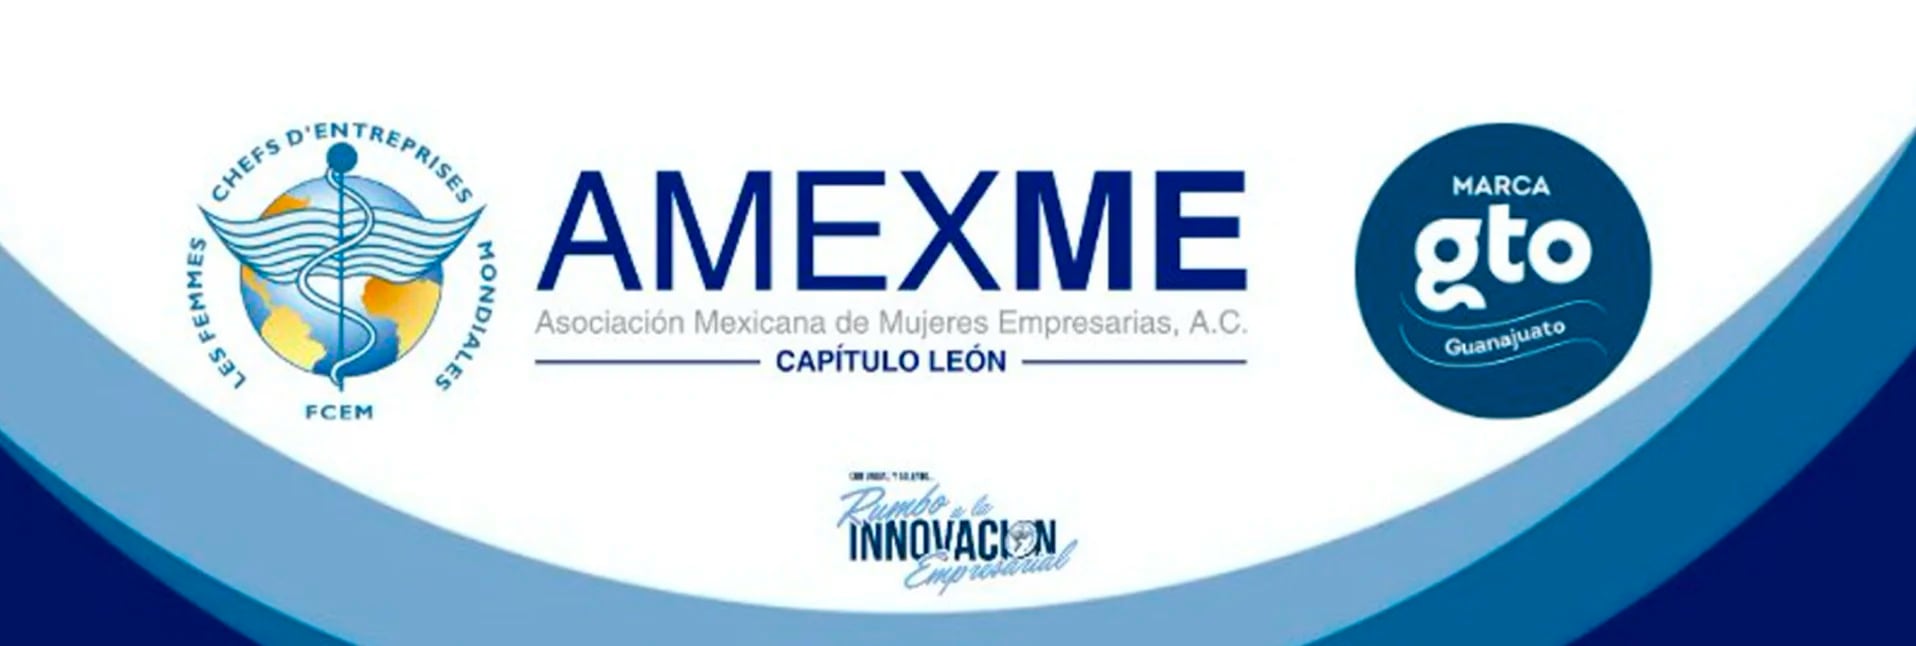 La convocatoria fue realizada por la Asociación Mexicana de Mujeres Empresarias, capítulo León (Foto: Twitter/@AMEXME_Leon)